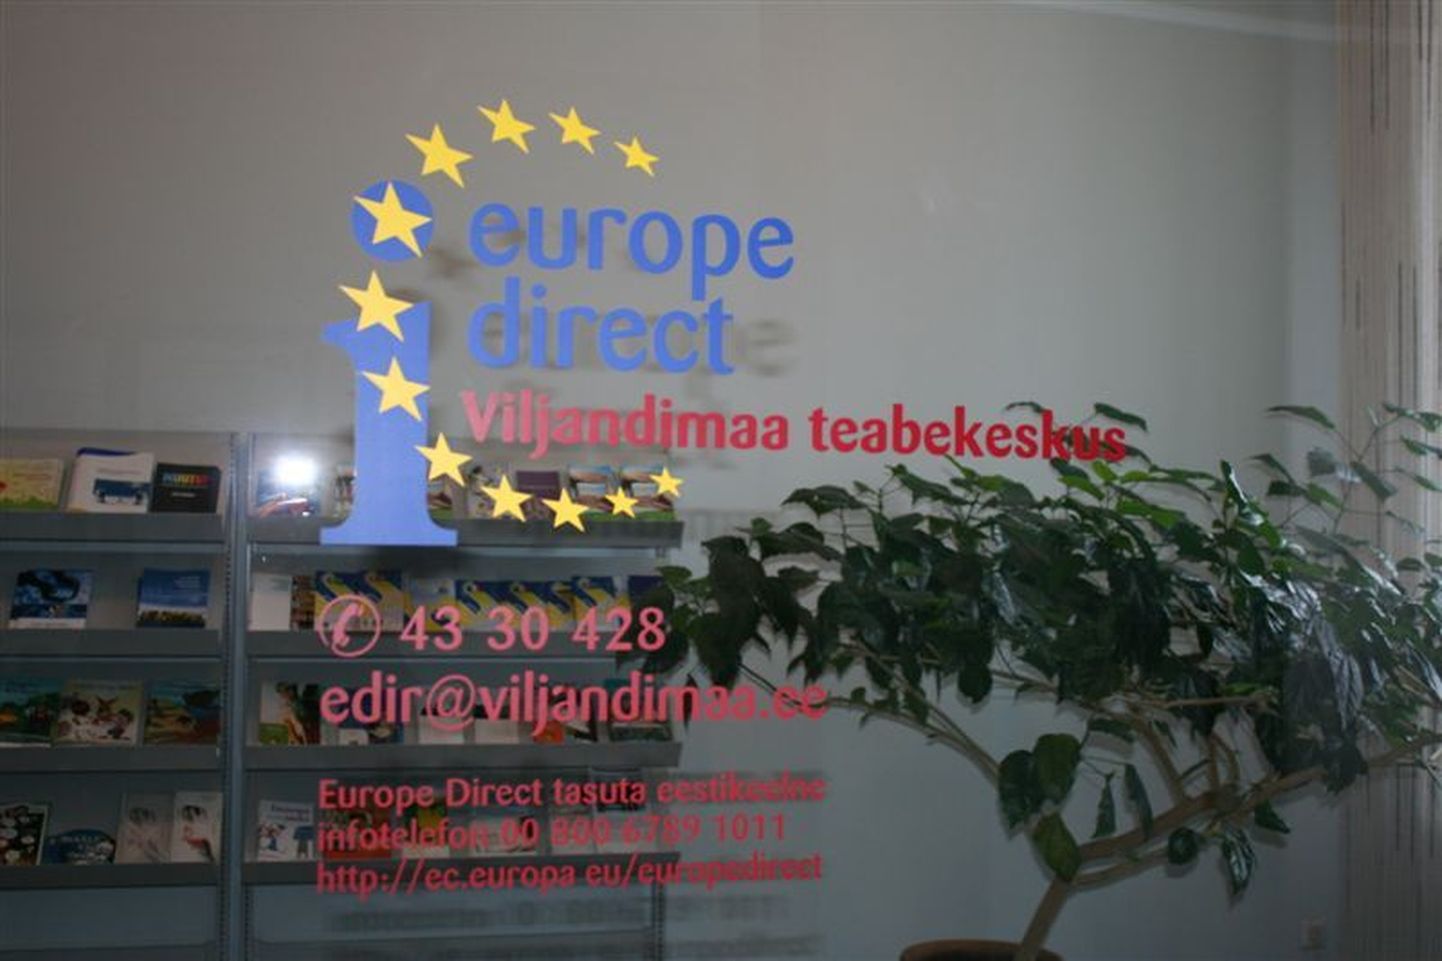 Europe Direct Viljandimaa teabekeskus.